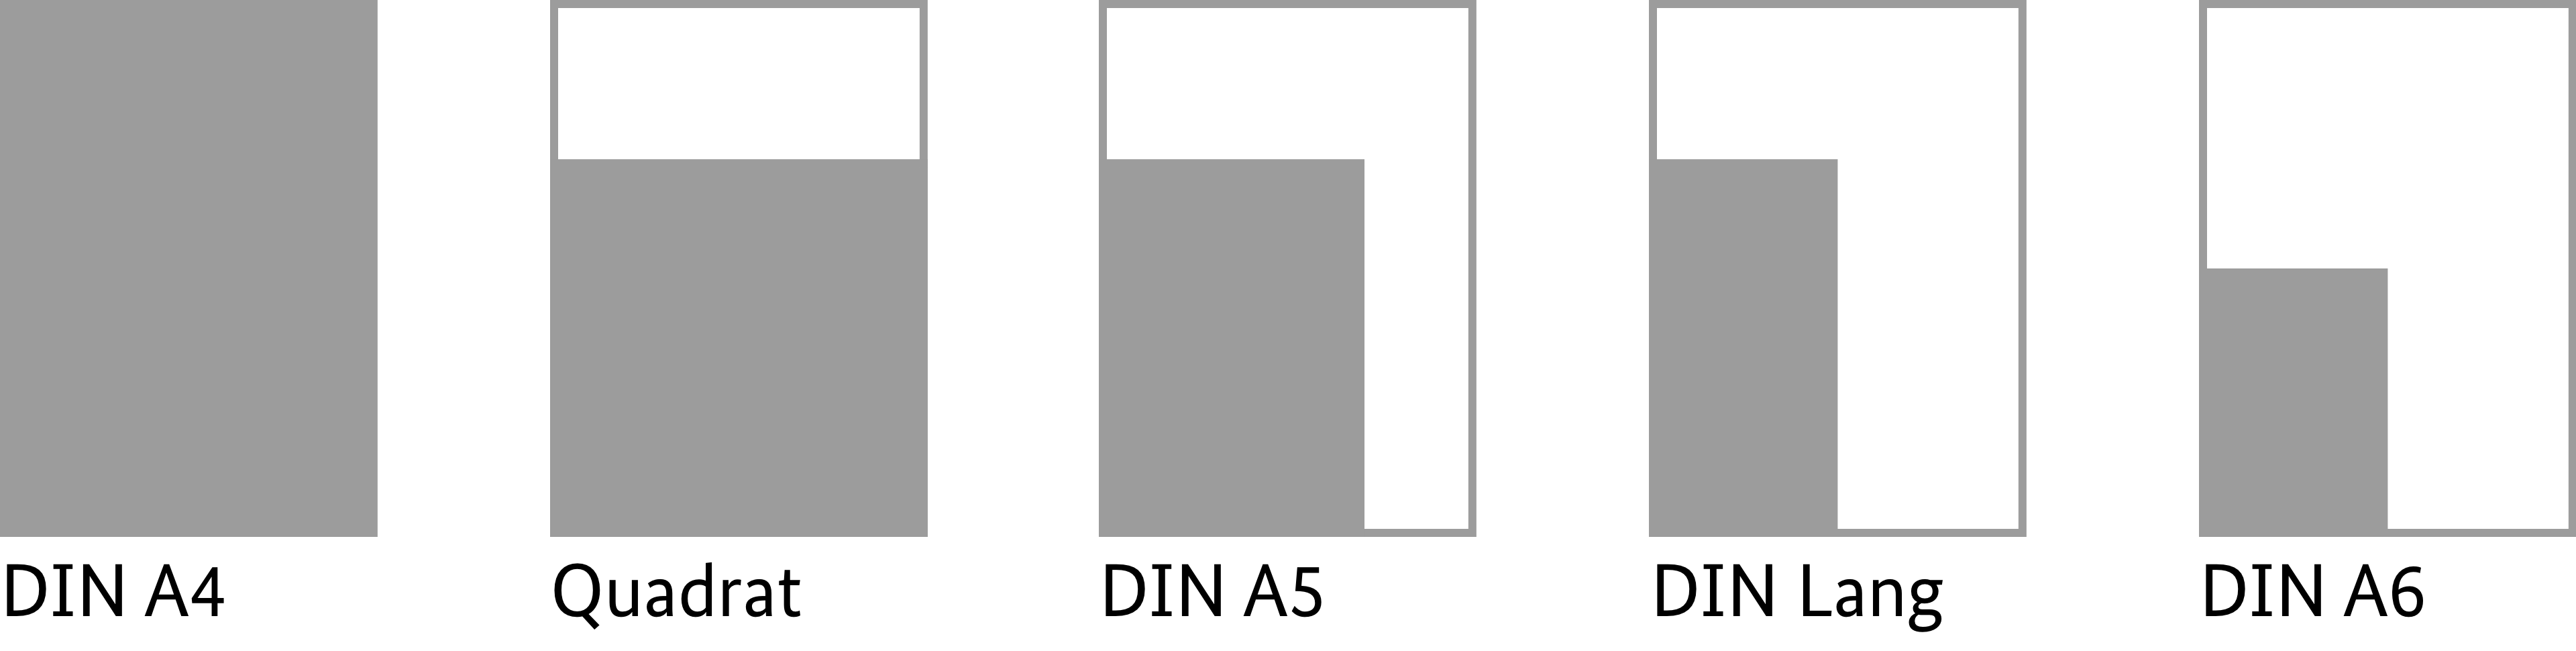 Schematische Darstellung in proportionaler Größe zueinander: DIN A4, Quadrat, DIN A5, DIN Lang, DIN A6.